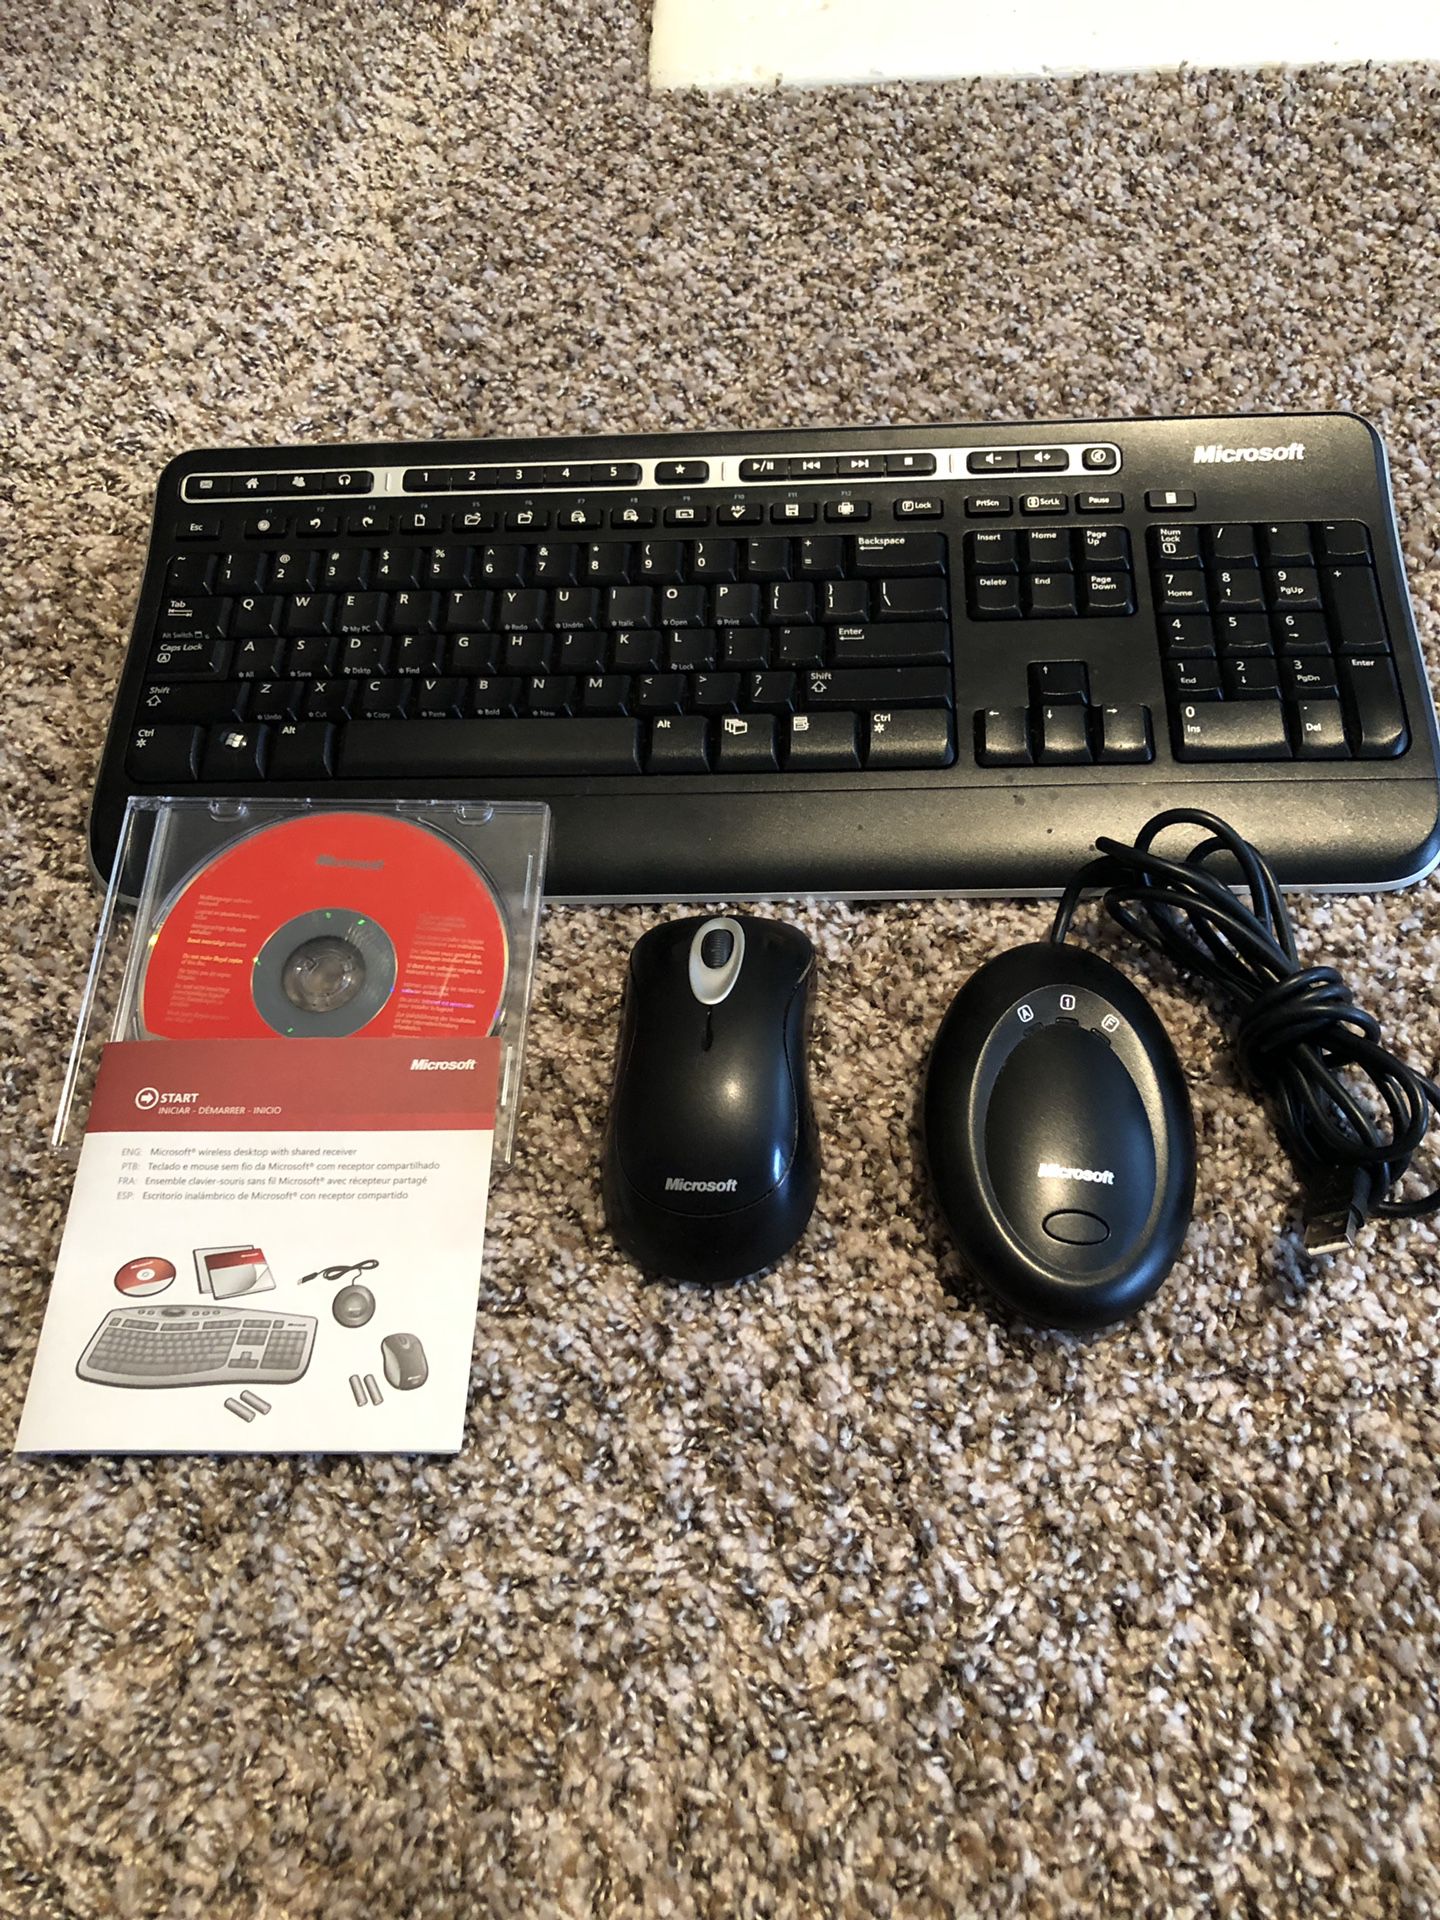 Microsoft 1000 wireless keyboard & mouse